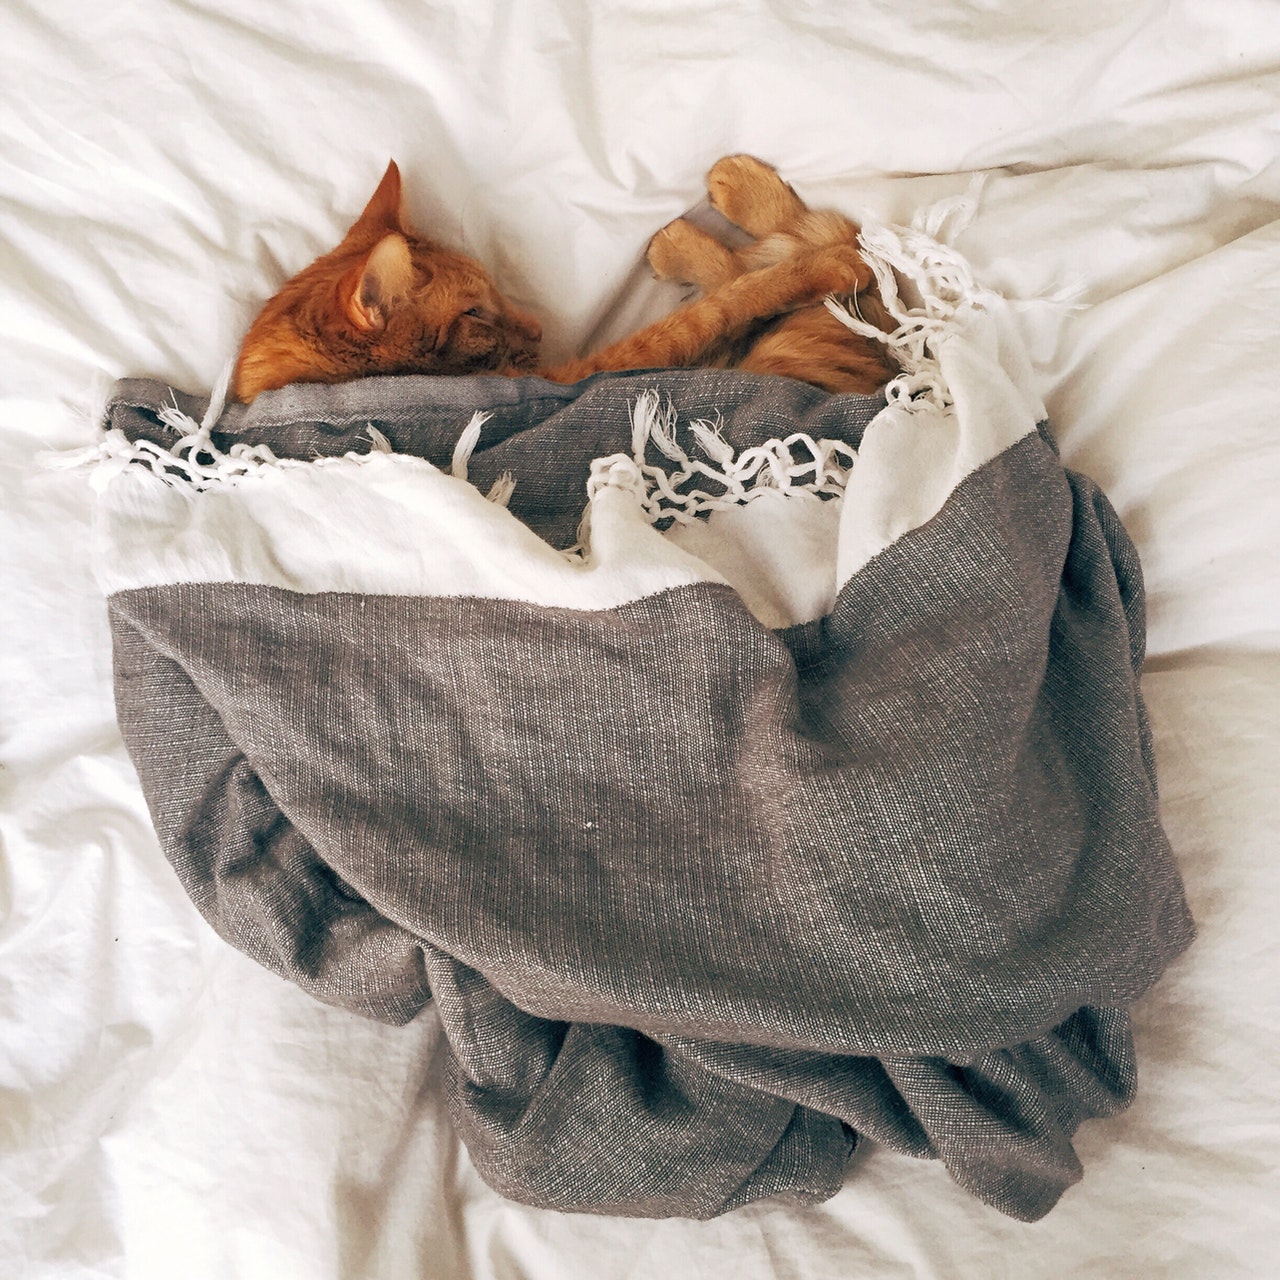 Kot śpi pod kołdrą? Jest mu tam ciepło i wygodnie, a Ciebie darzy zaufaniem!